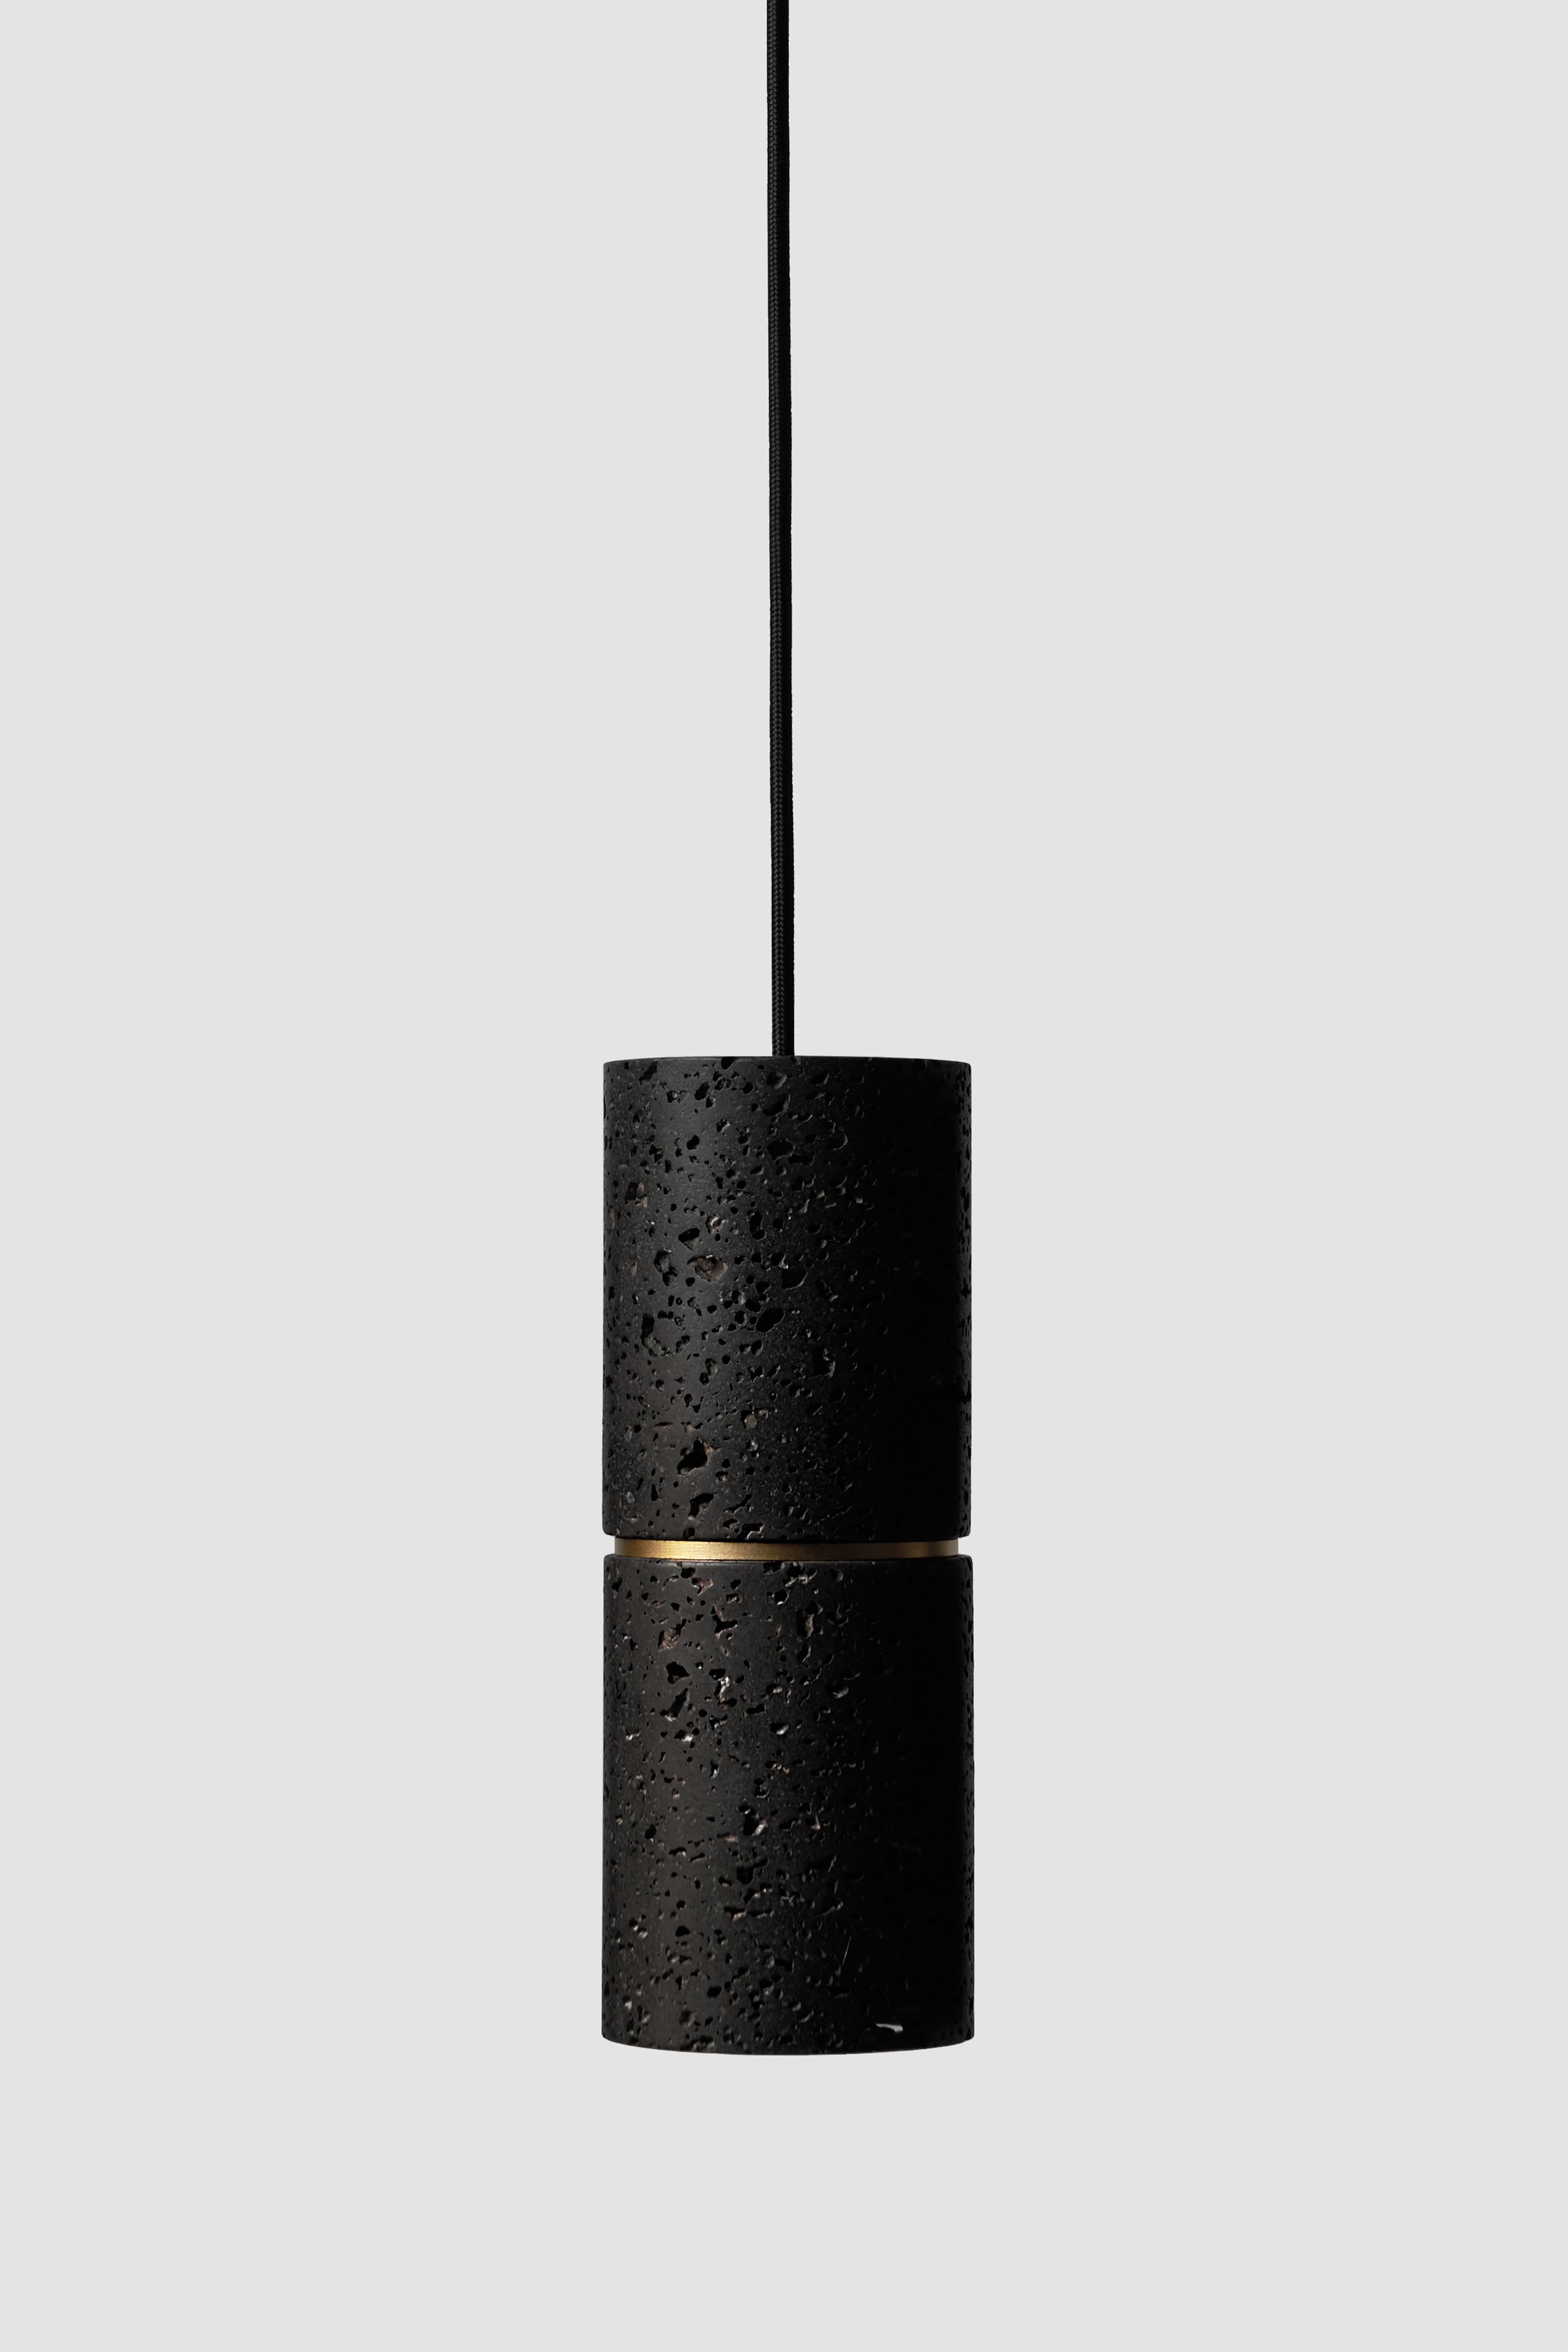 Industrial Contemporary Pendant Lamp 'RI' in Black Lava Stone 'Brass Finish' For Sale